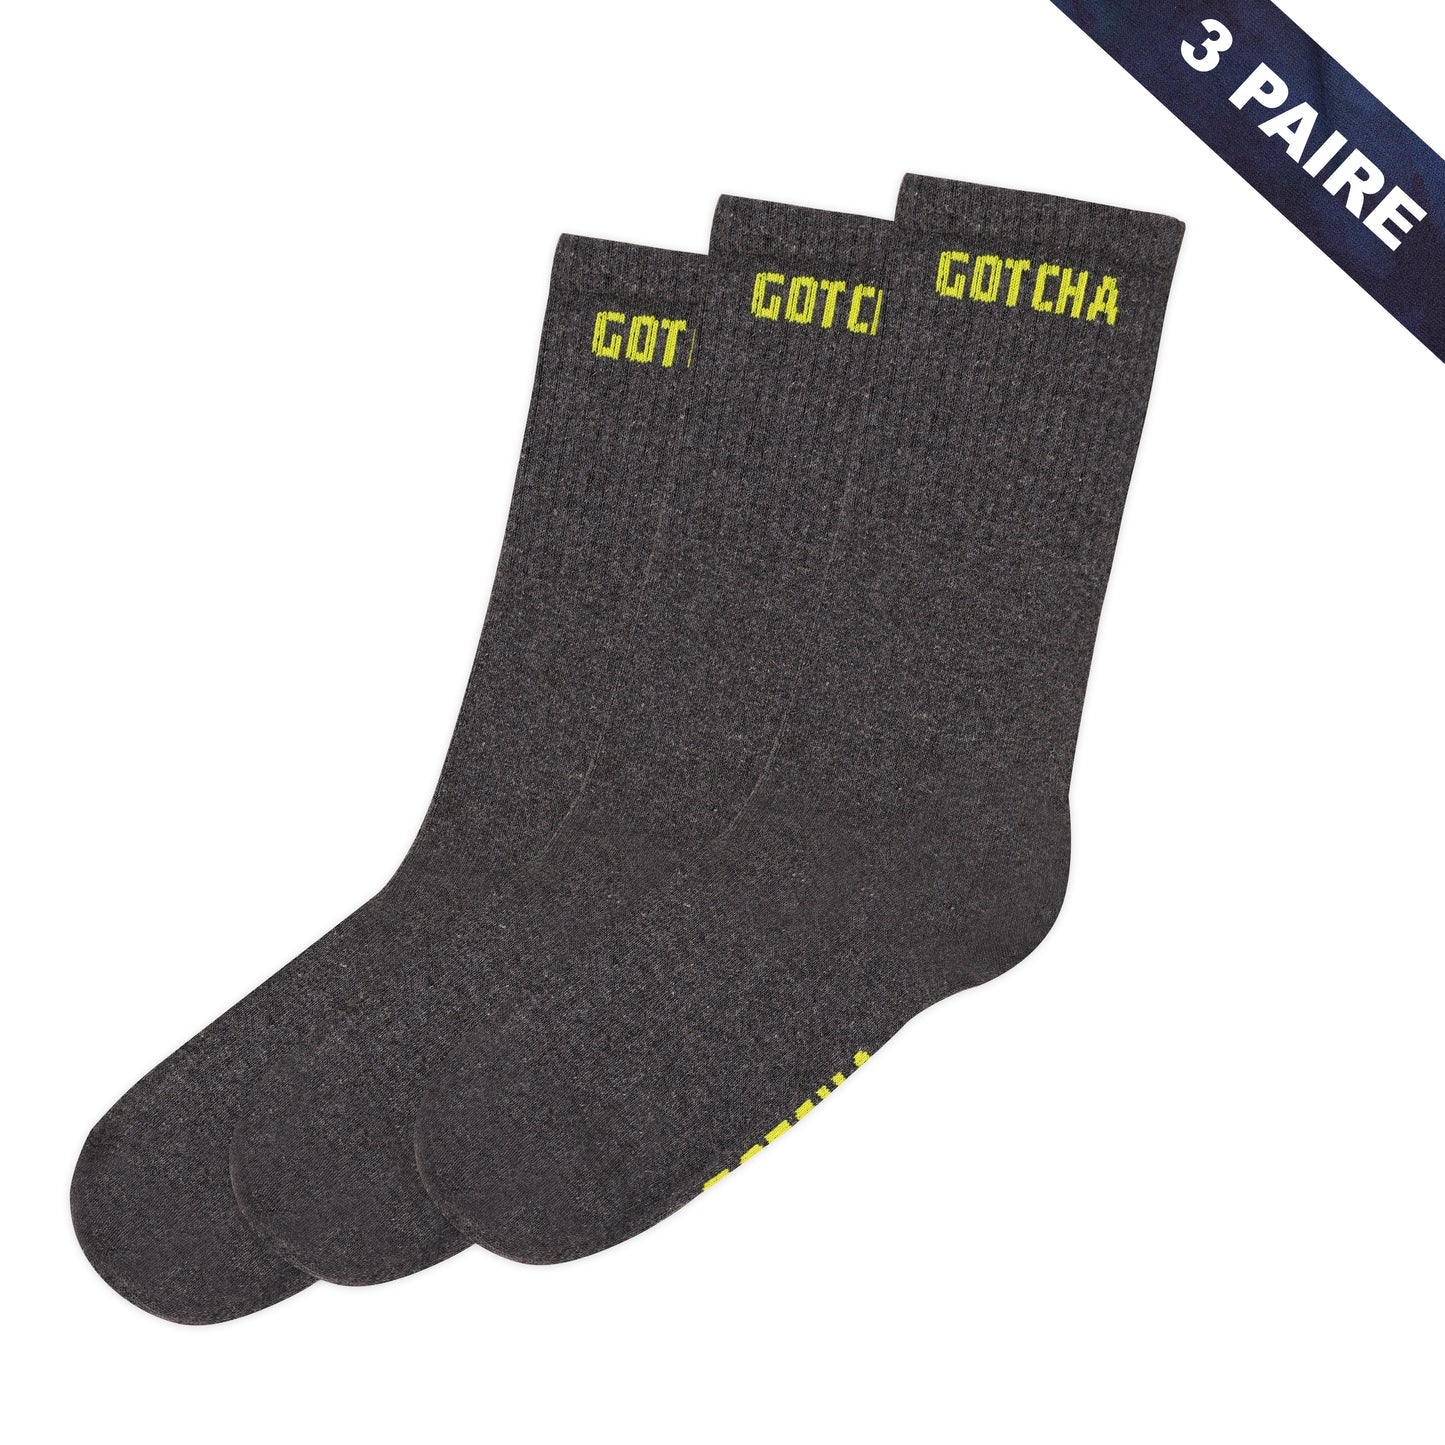 Socks22Long-LT